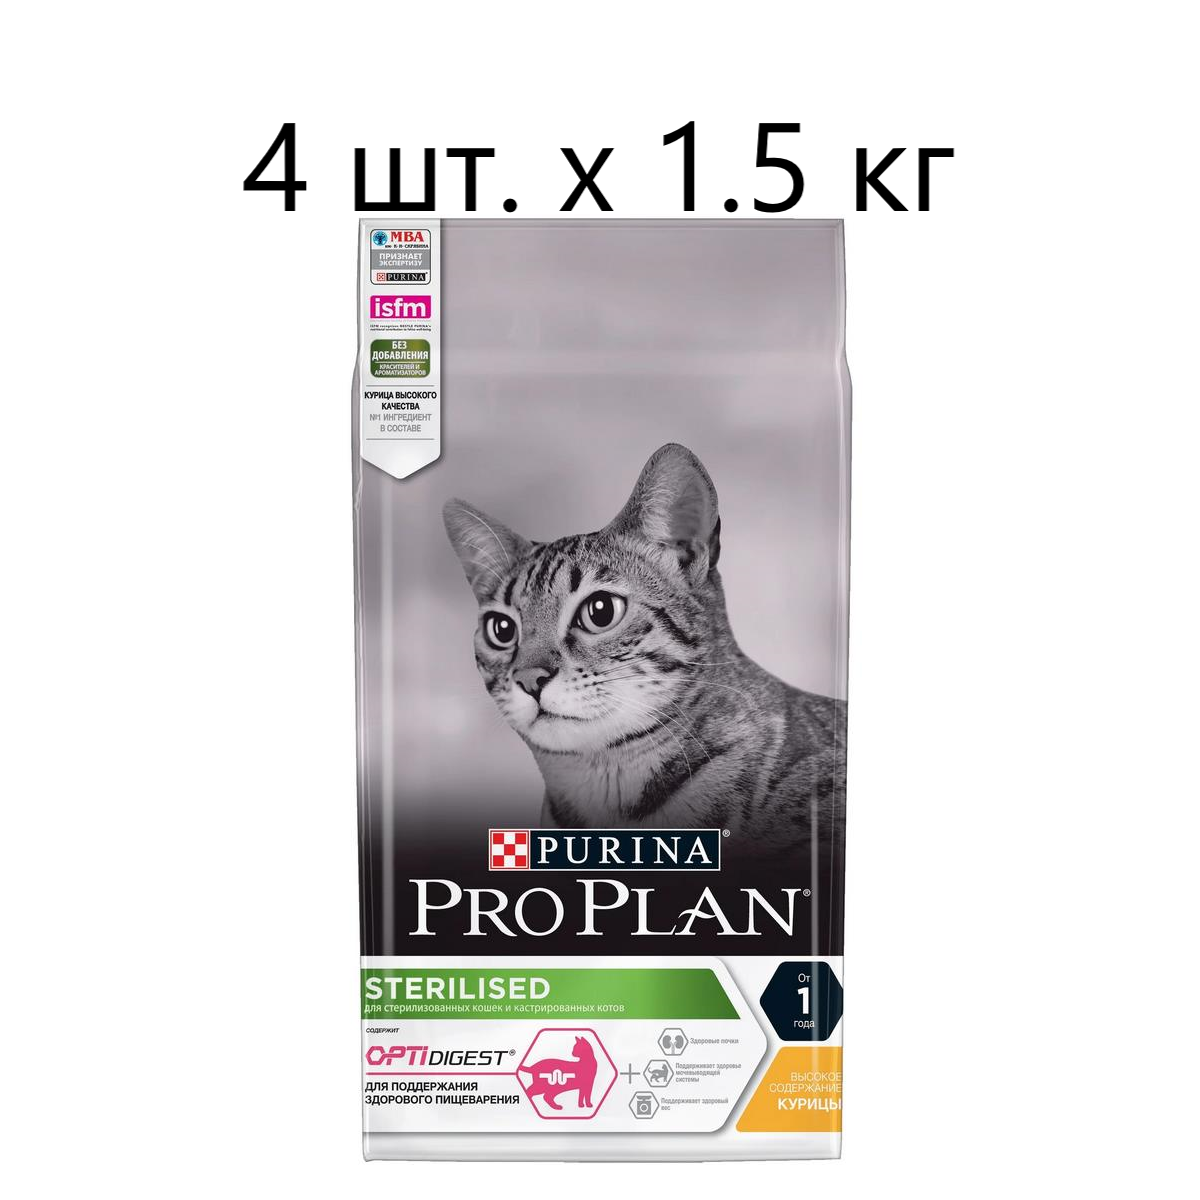 Сухой корм для стерилизованных кошек и кастрированных котов Purina Pro Plan Sterilised ADULT OPTIDIGEST, с высоким содержанием курицы, 4 шт. х 1.5 кг